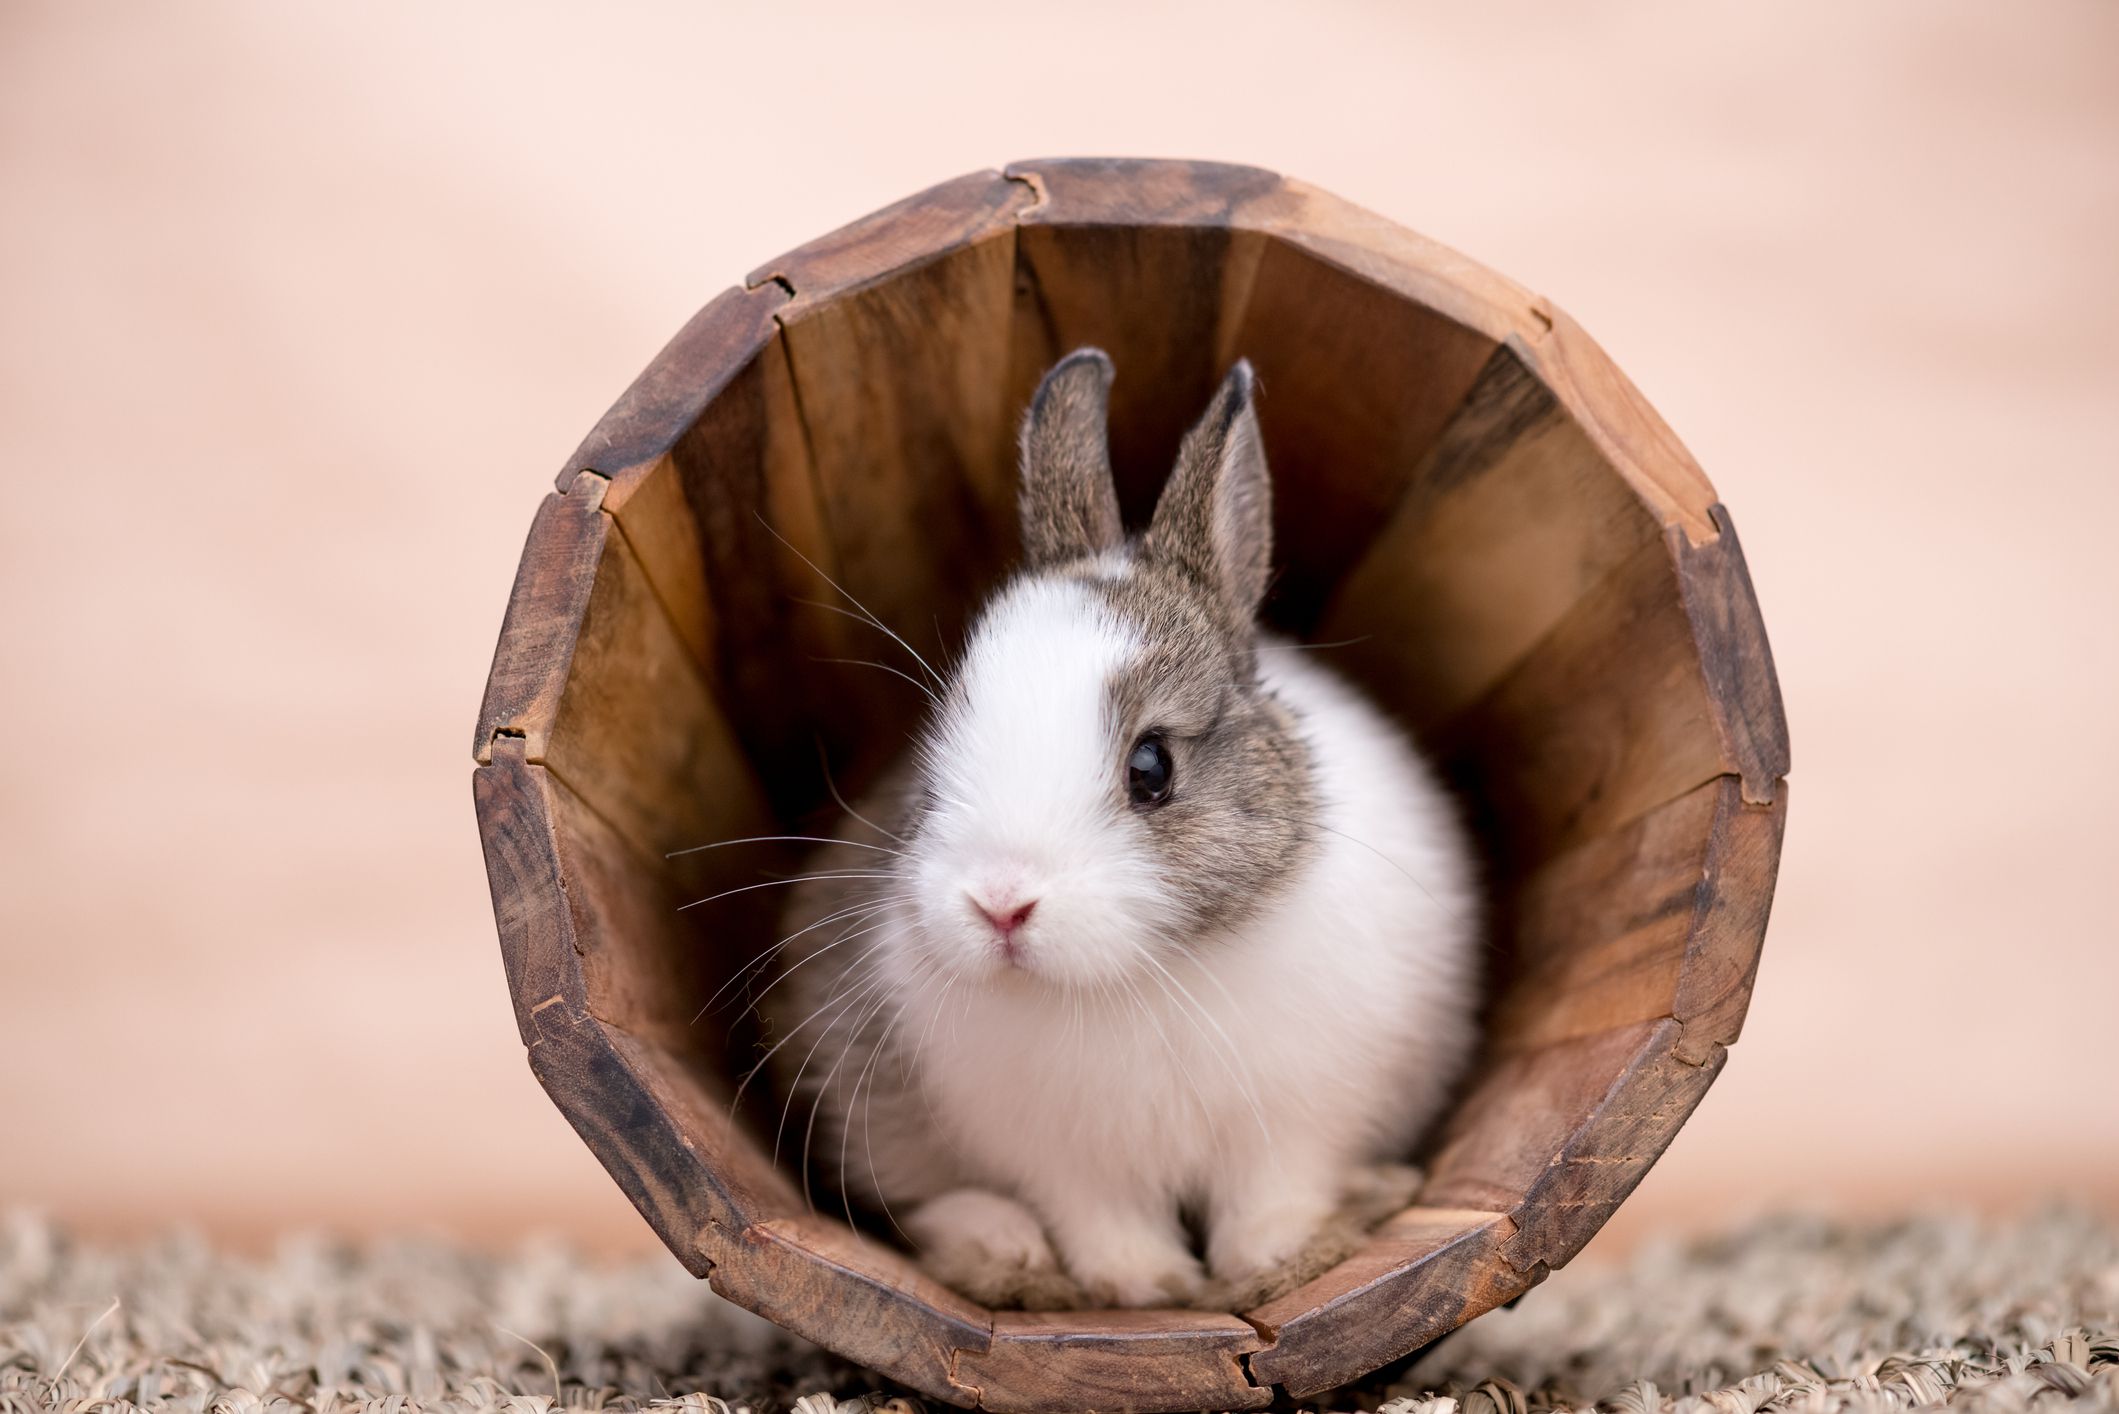 silindir şeklindeki kütüğün içinde oturan tavşan